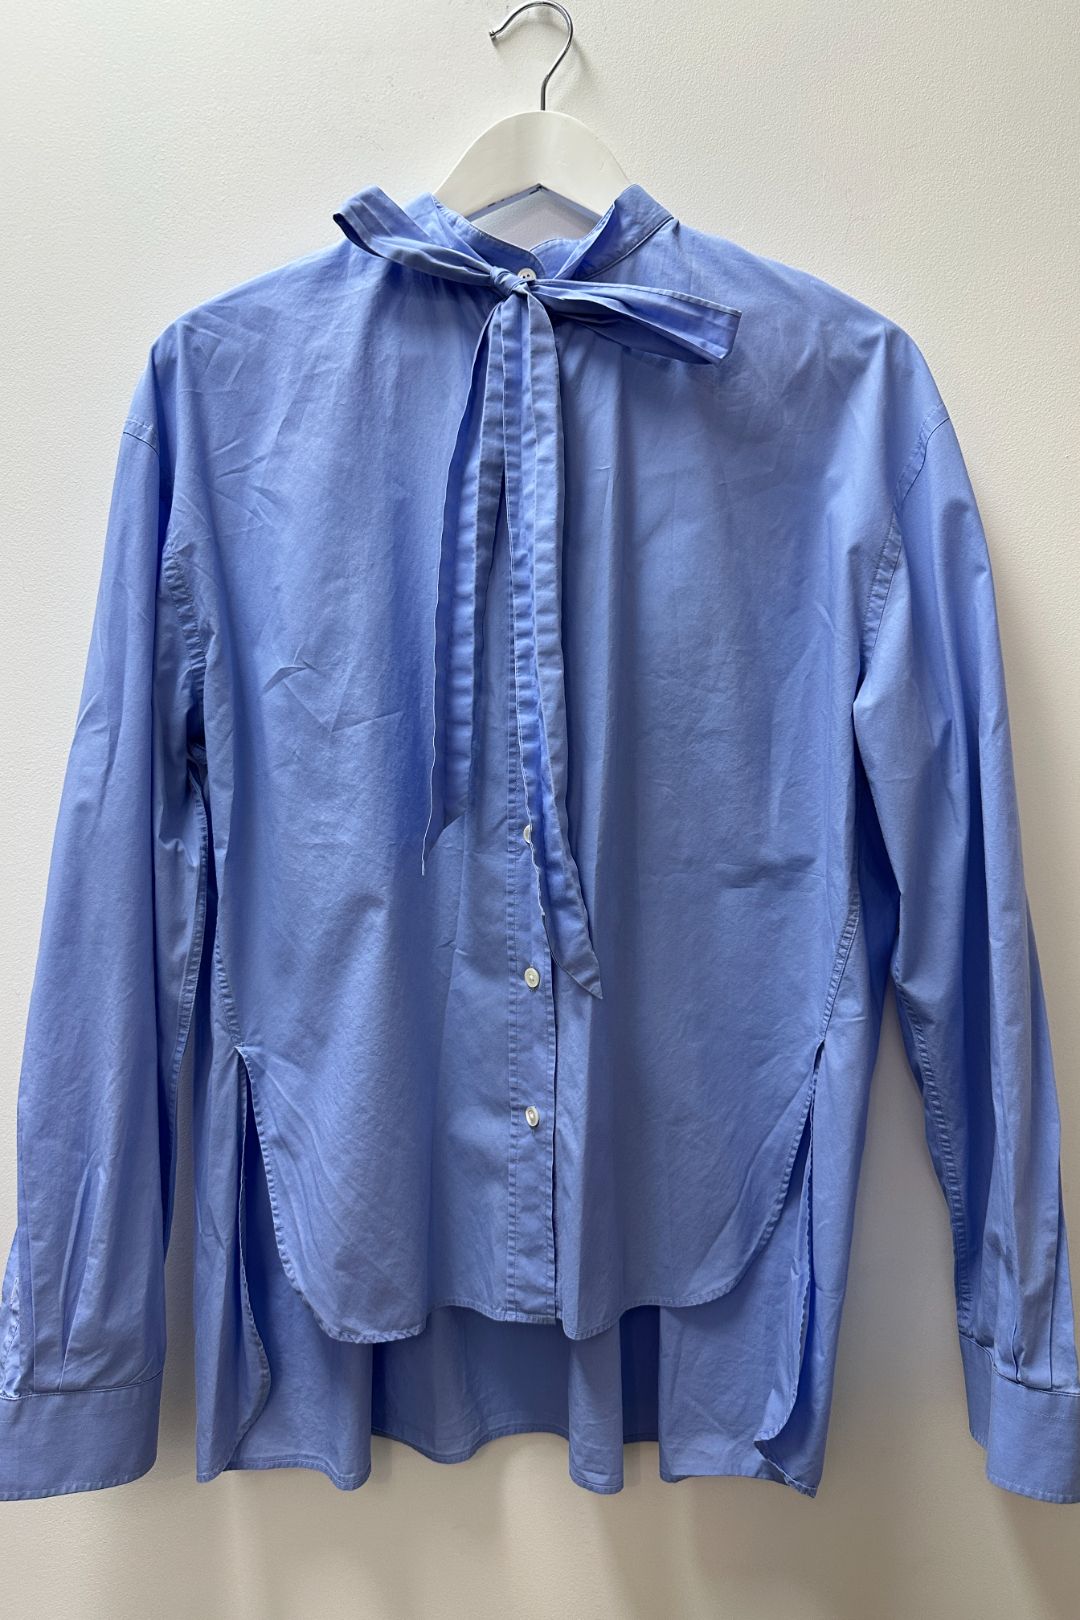 Scanlan Theodore Blue Cotton Shirt with Neck Tie